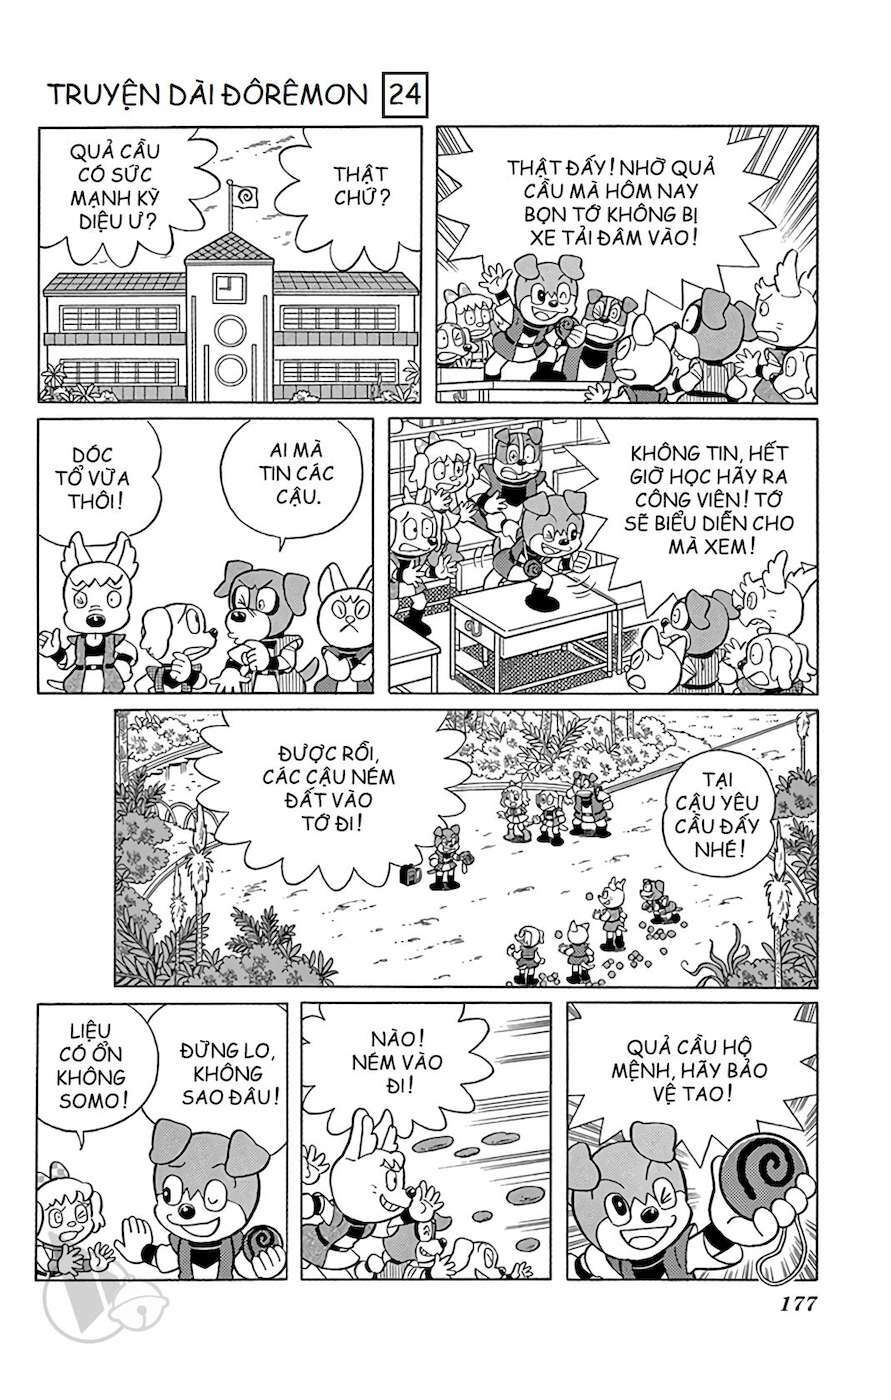 Truyện Tranh Doraemon: Nôbita Ở Vương Quốc Chó Mèo trang 176